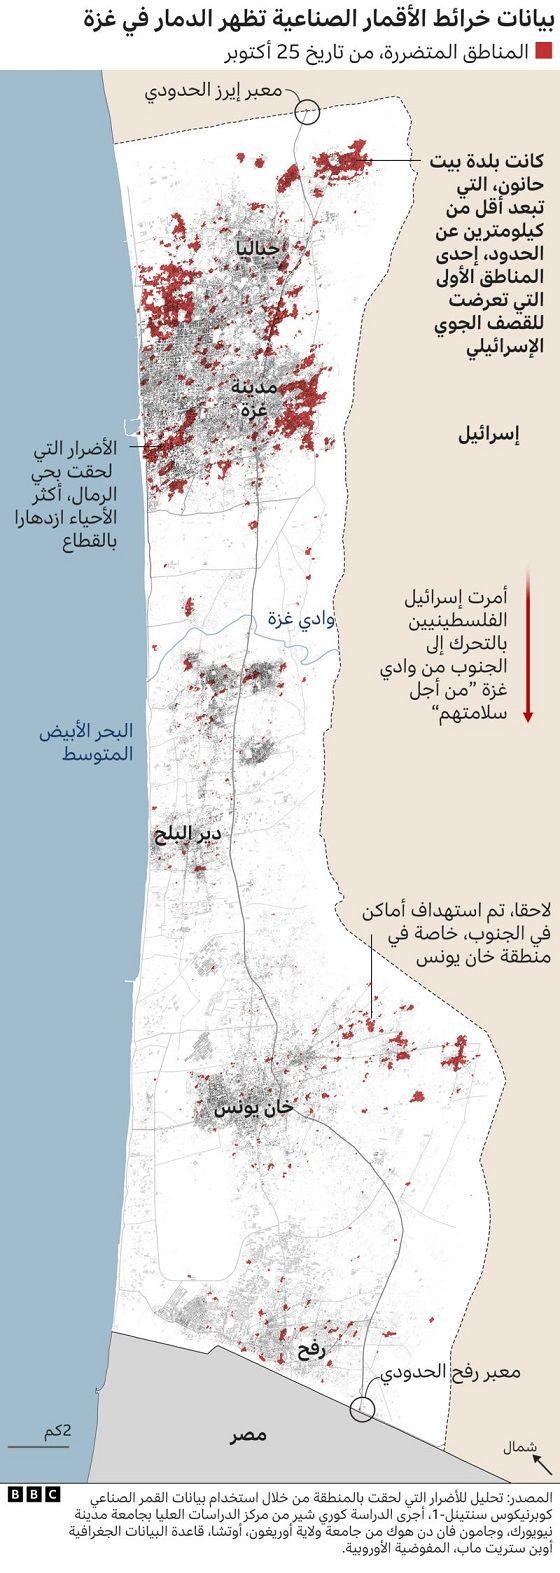 بيانات خرائط الدمار في غزة